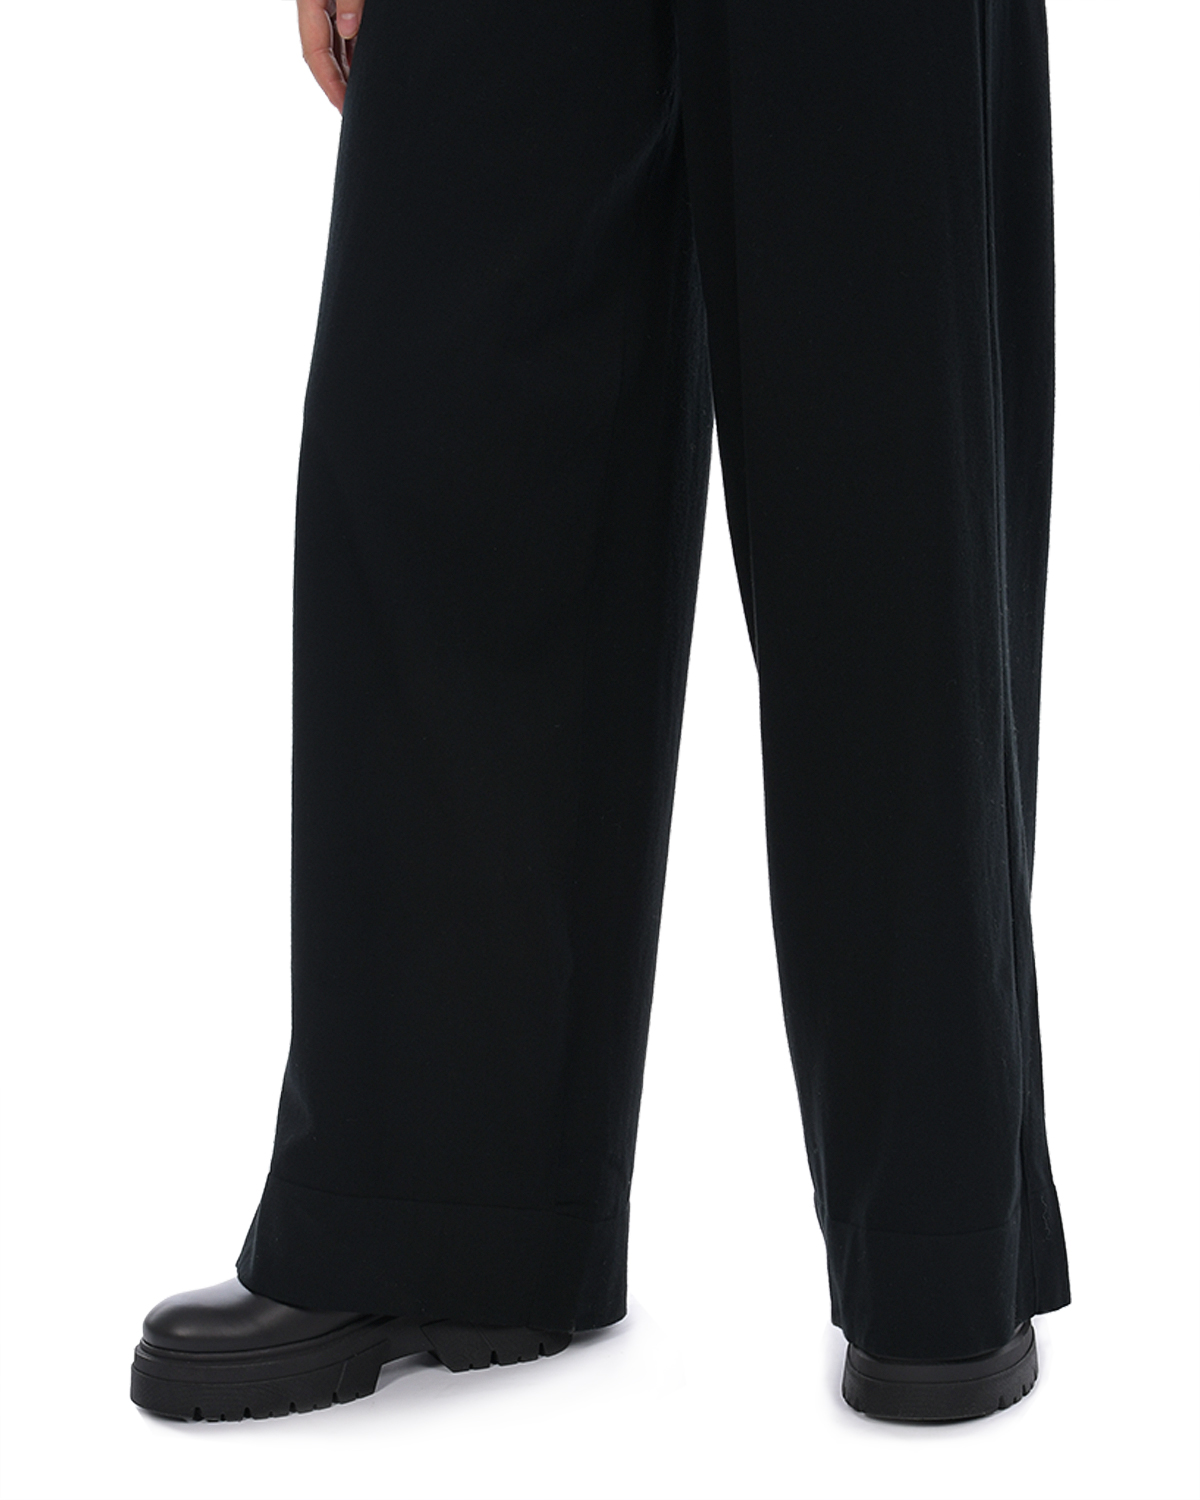 Черные трикотажные брюки-палаццо Dorothee Schumacher, размер 44, цвет черный - фото 9